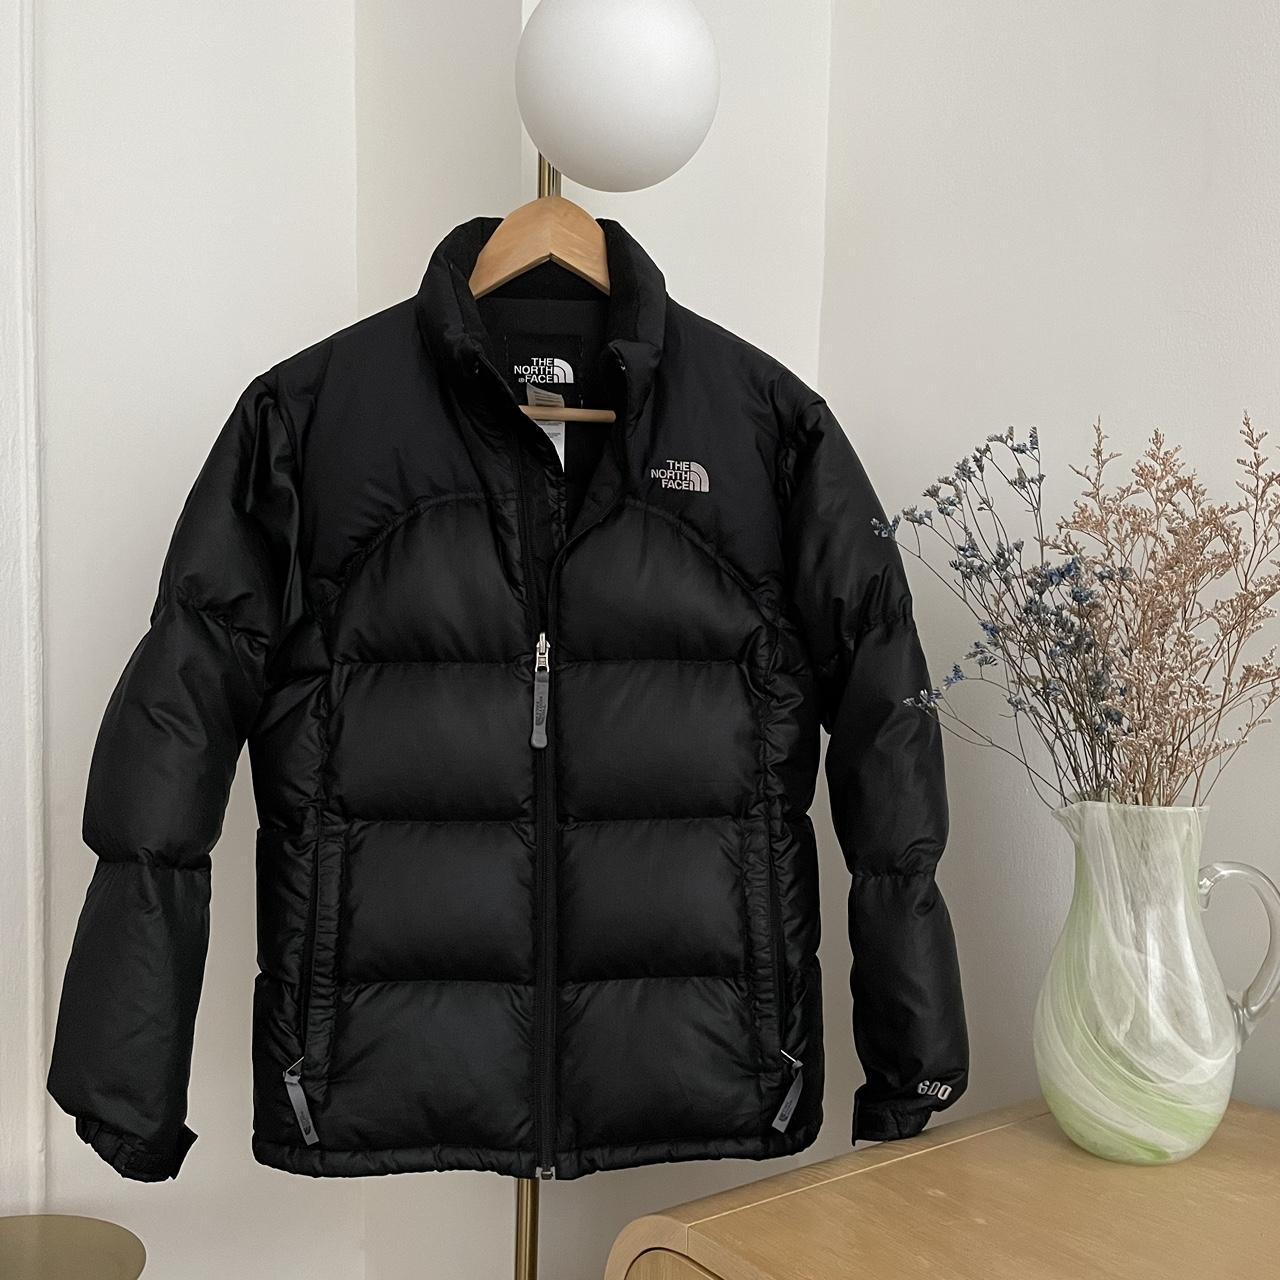 Vintage North Face Puffer Jacket Size: XL/TG (for... - Depop